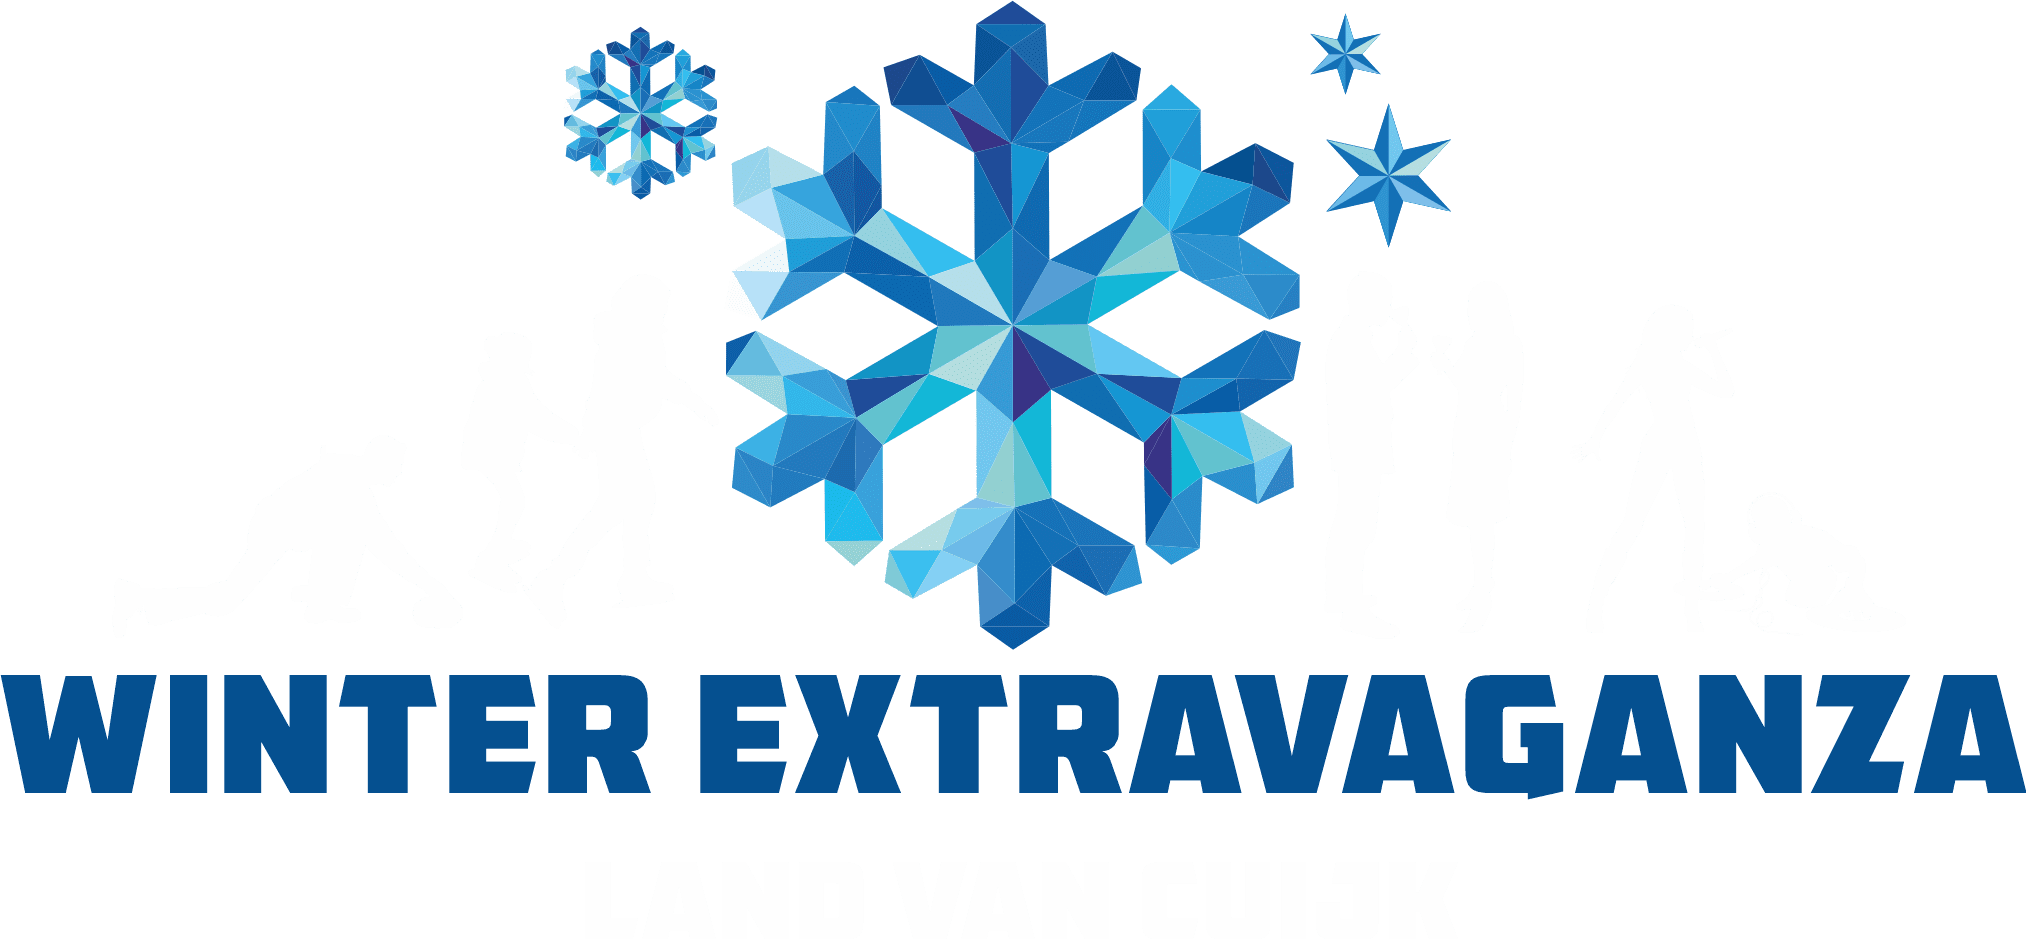 Winterextravaganza Land van Cuijk